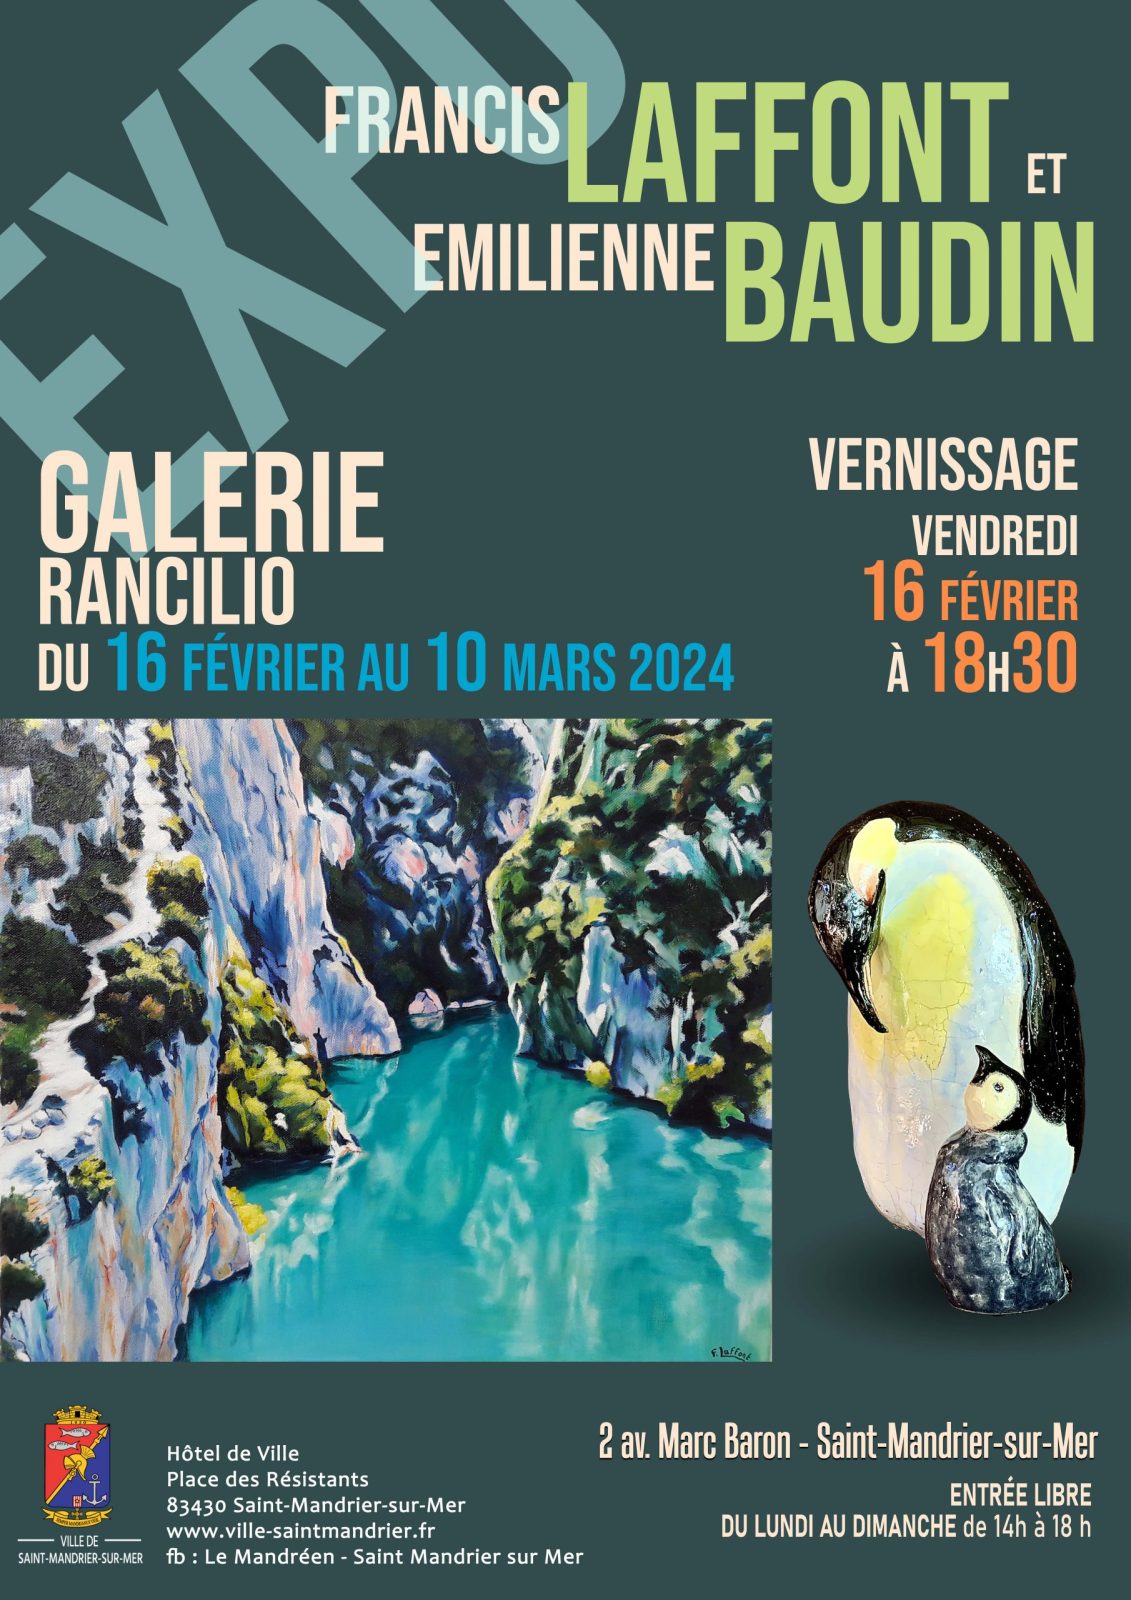 Francis Laffont and Emilienne Baudin exhibition à Saint-Mandrier-sur-Mer - 0